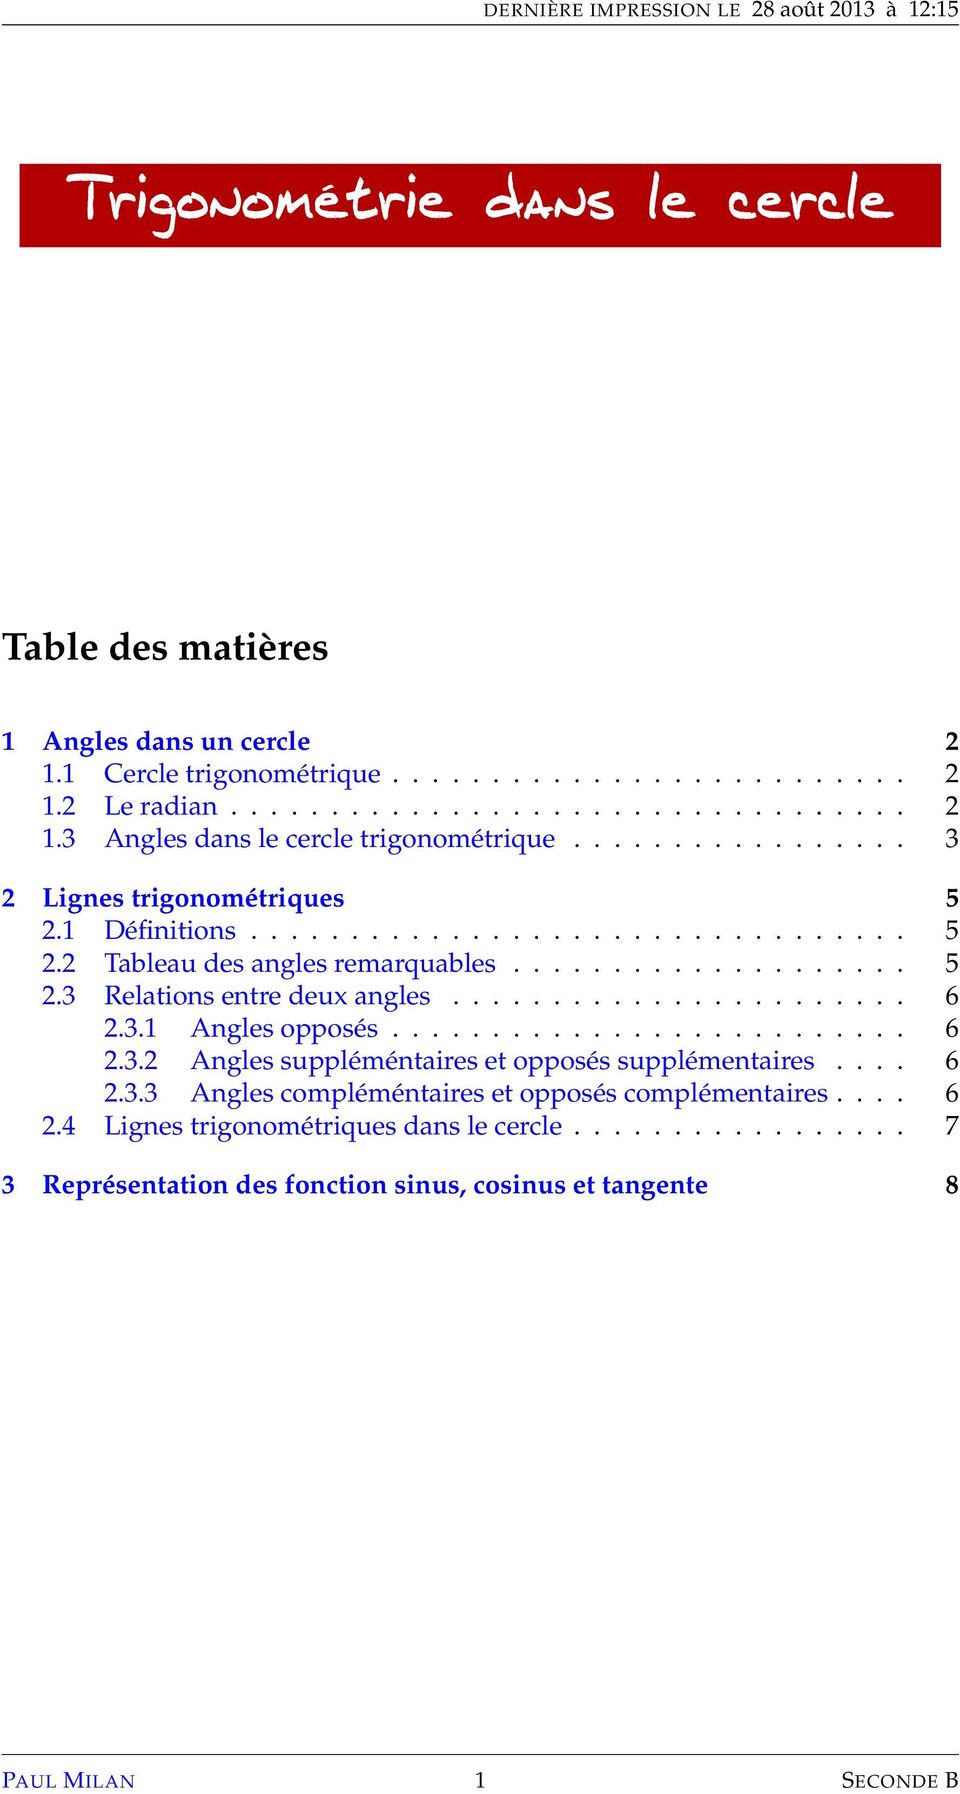 Table Trigonometrique Imprimer